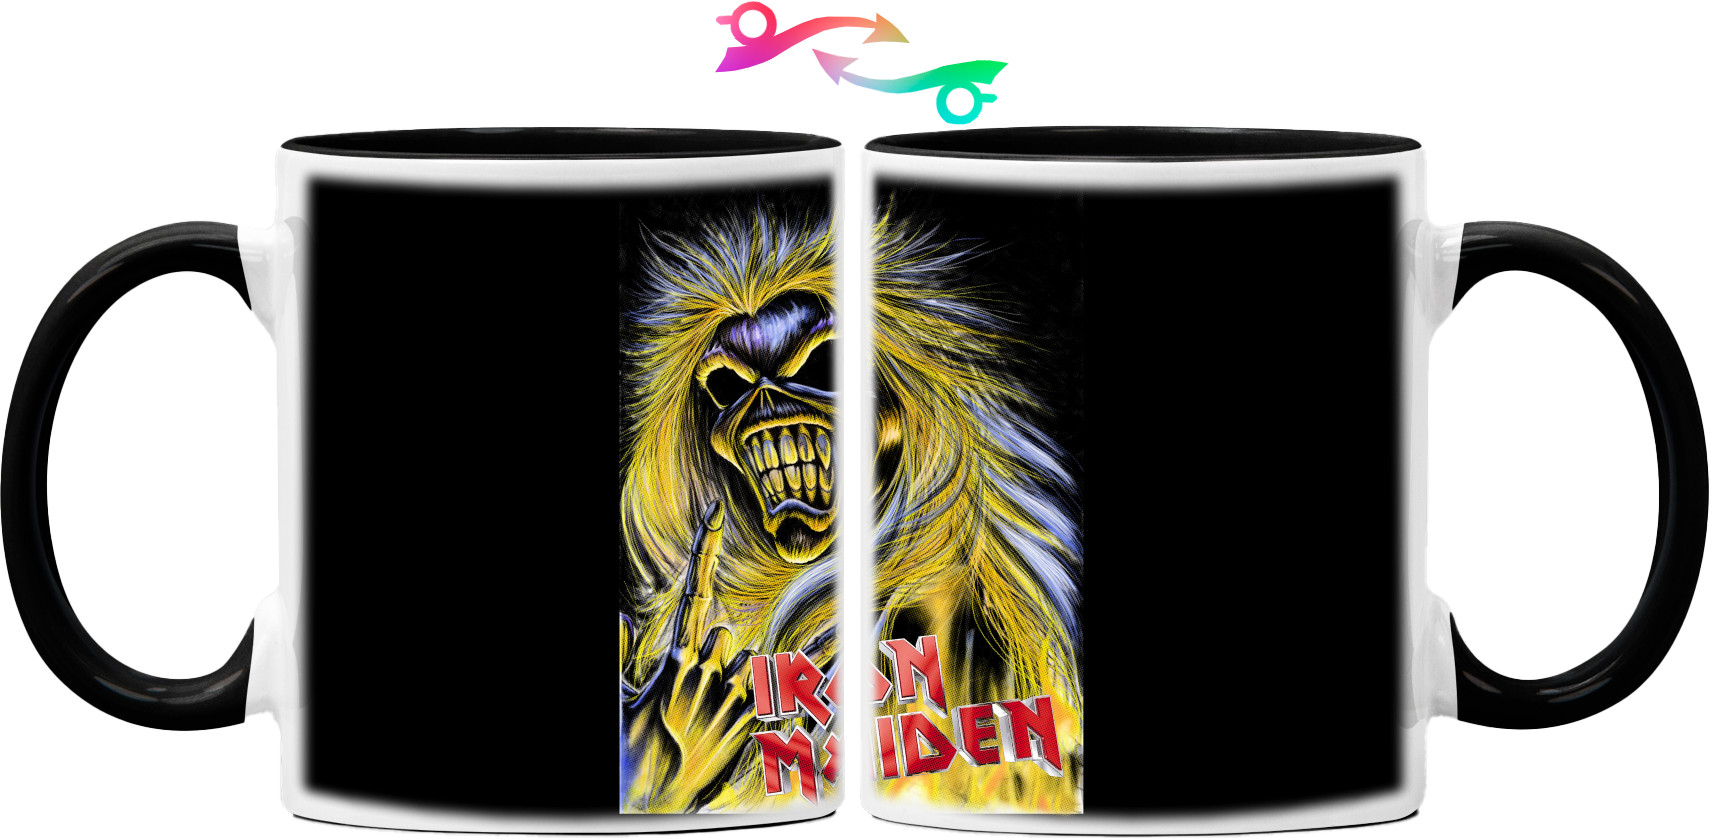 Iron Maiden - Mug - Iron Maiden 23 - Mfest